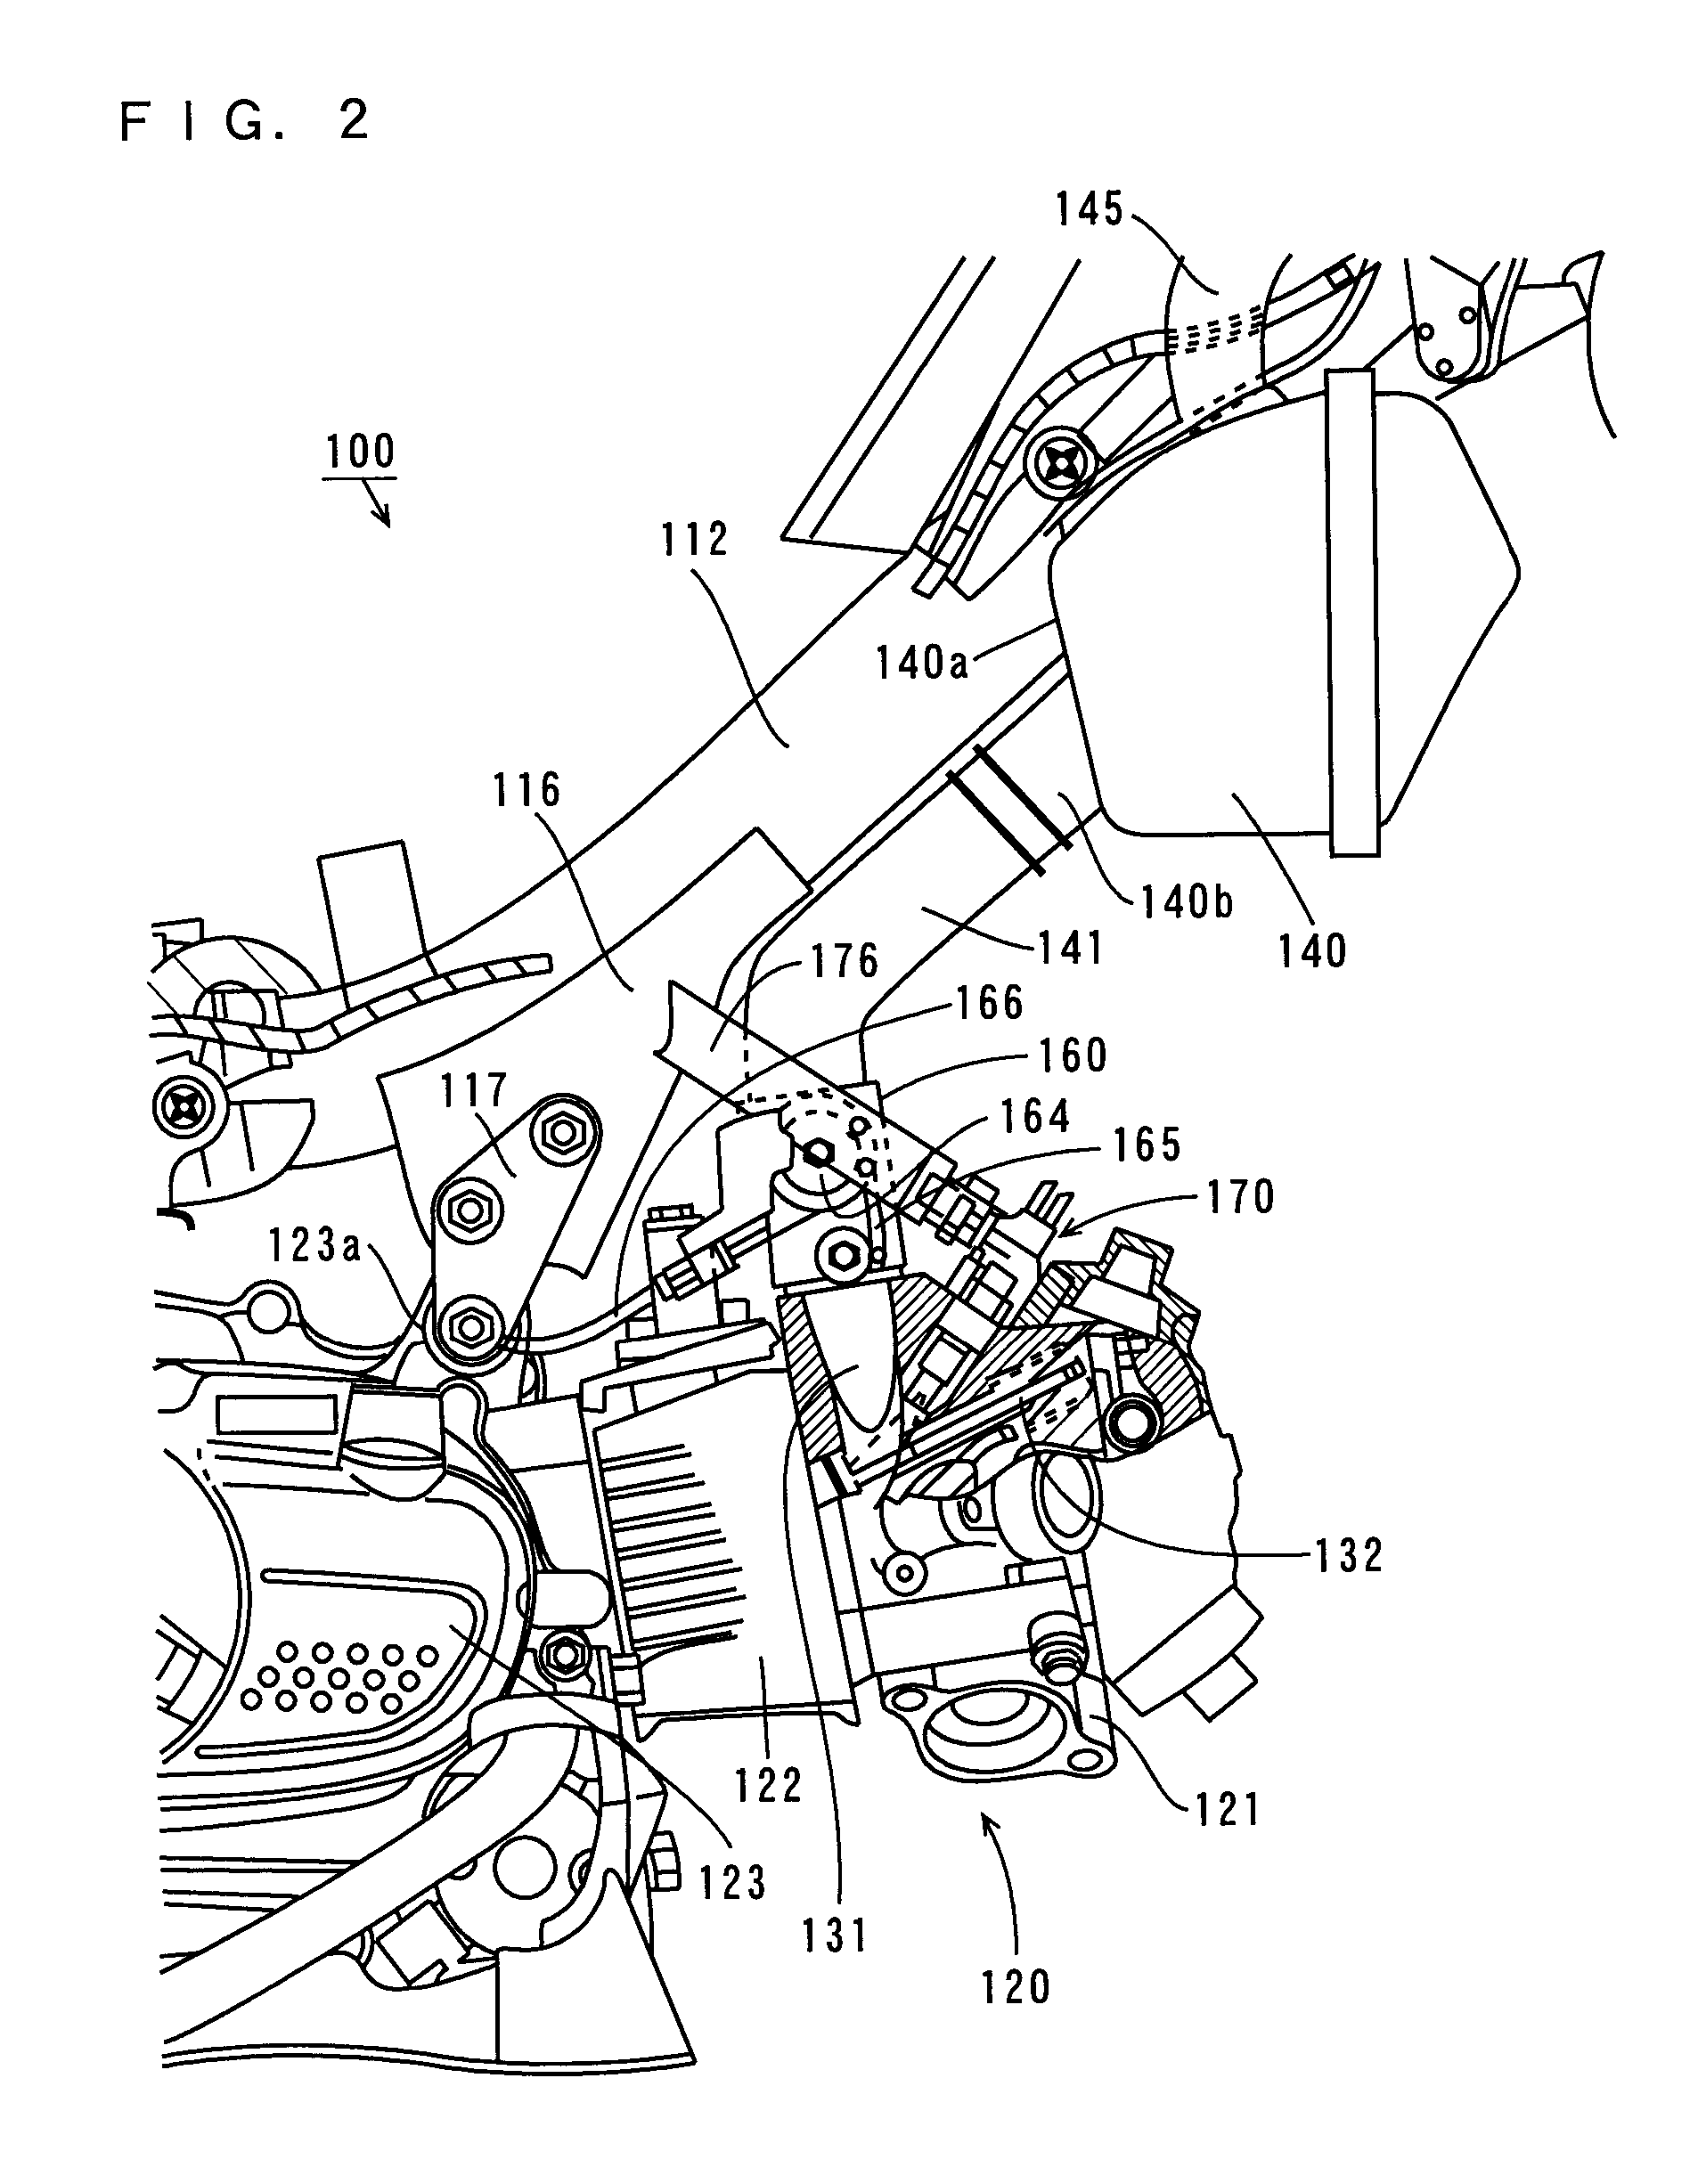 Saddle-straddling type motor vehicle